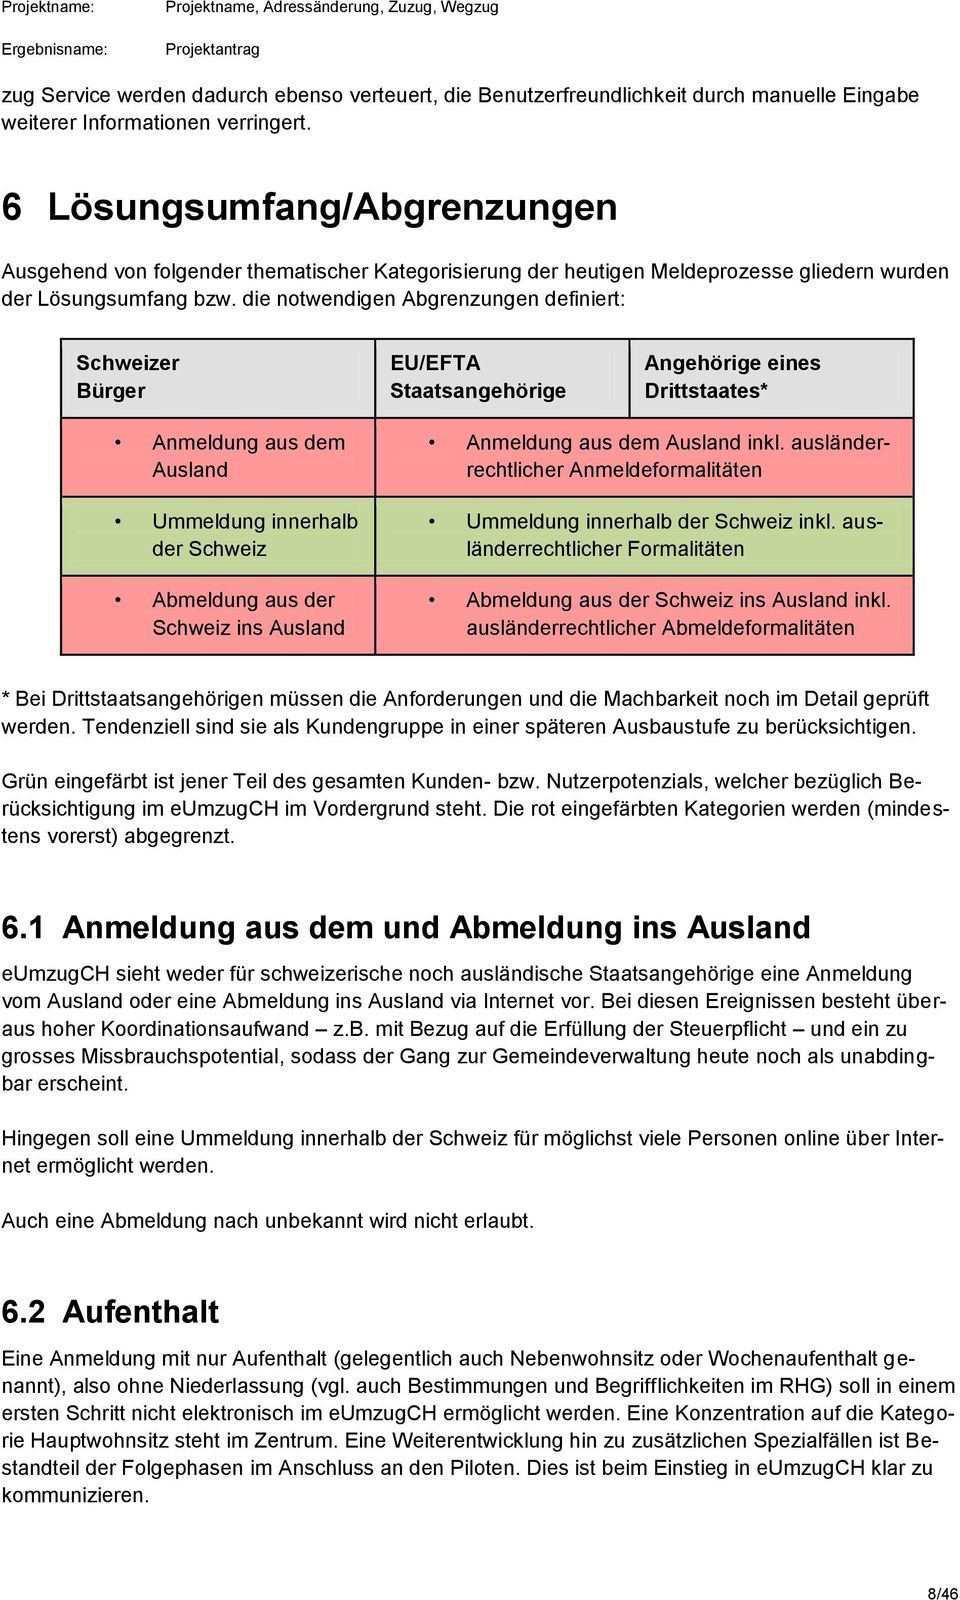 die notwendigen Abgrenzungen definiert: Schweizer Bürger EU/EFTA Staatsangehörige Angehörige eines Drittstaates* Anmeldung aus dem Ausland Ummeldung innerhalb der Schweiz Abmeldung aus der Schweiz